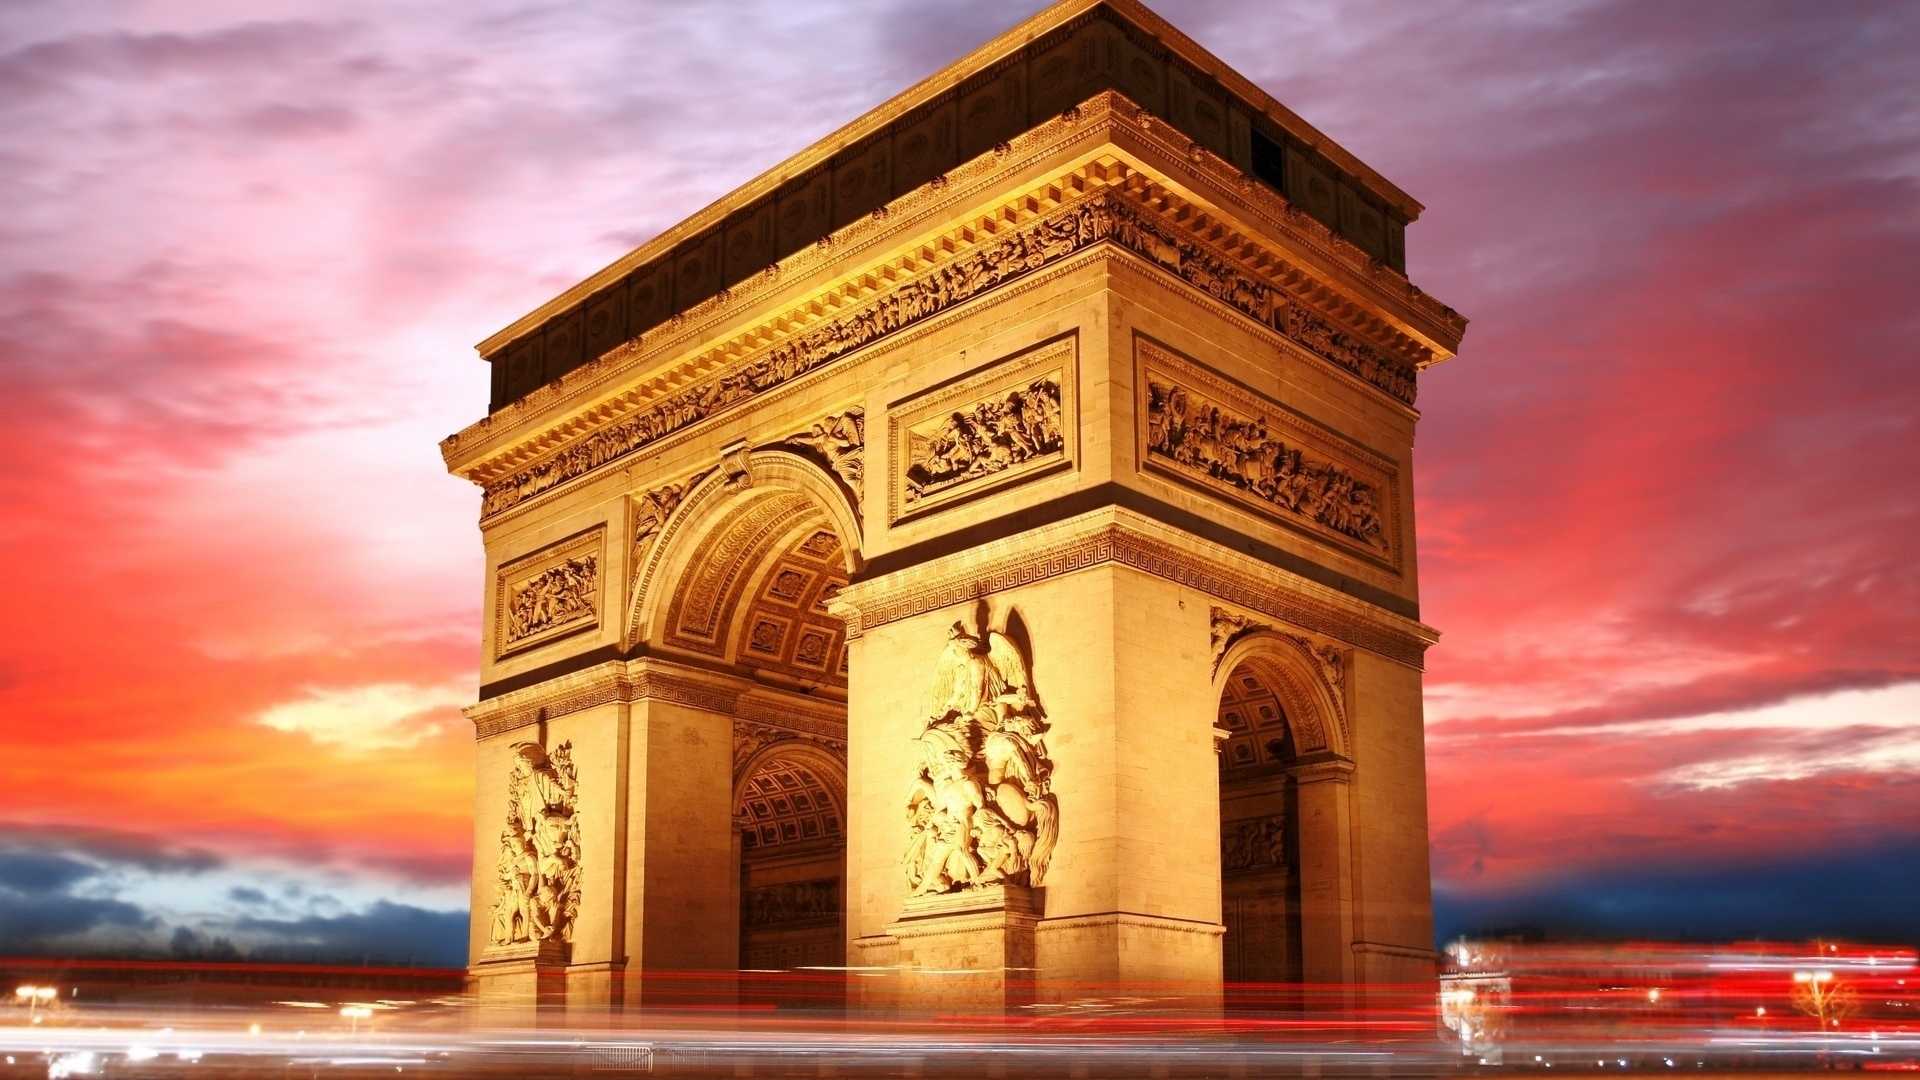 Достопримечательности франции — триумфальная арка (париж) - путешествия и круизы в любую страну мира